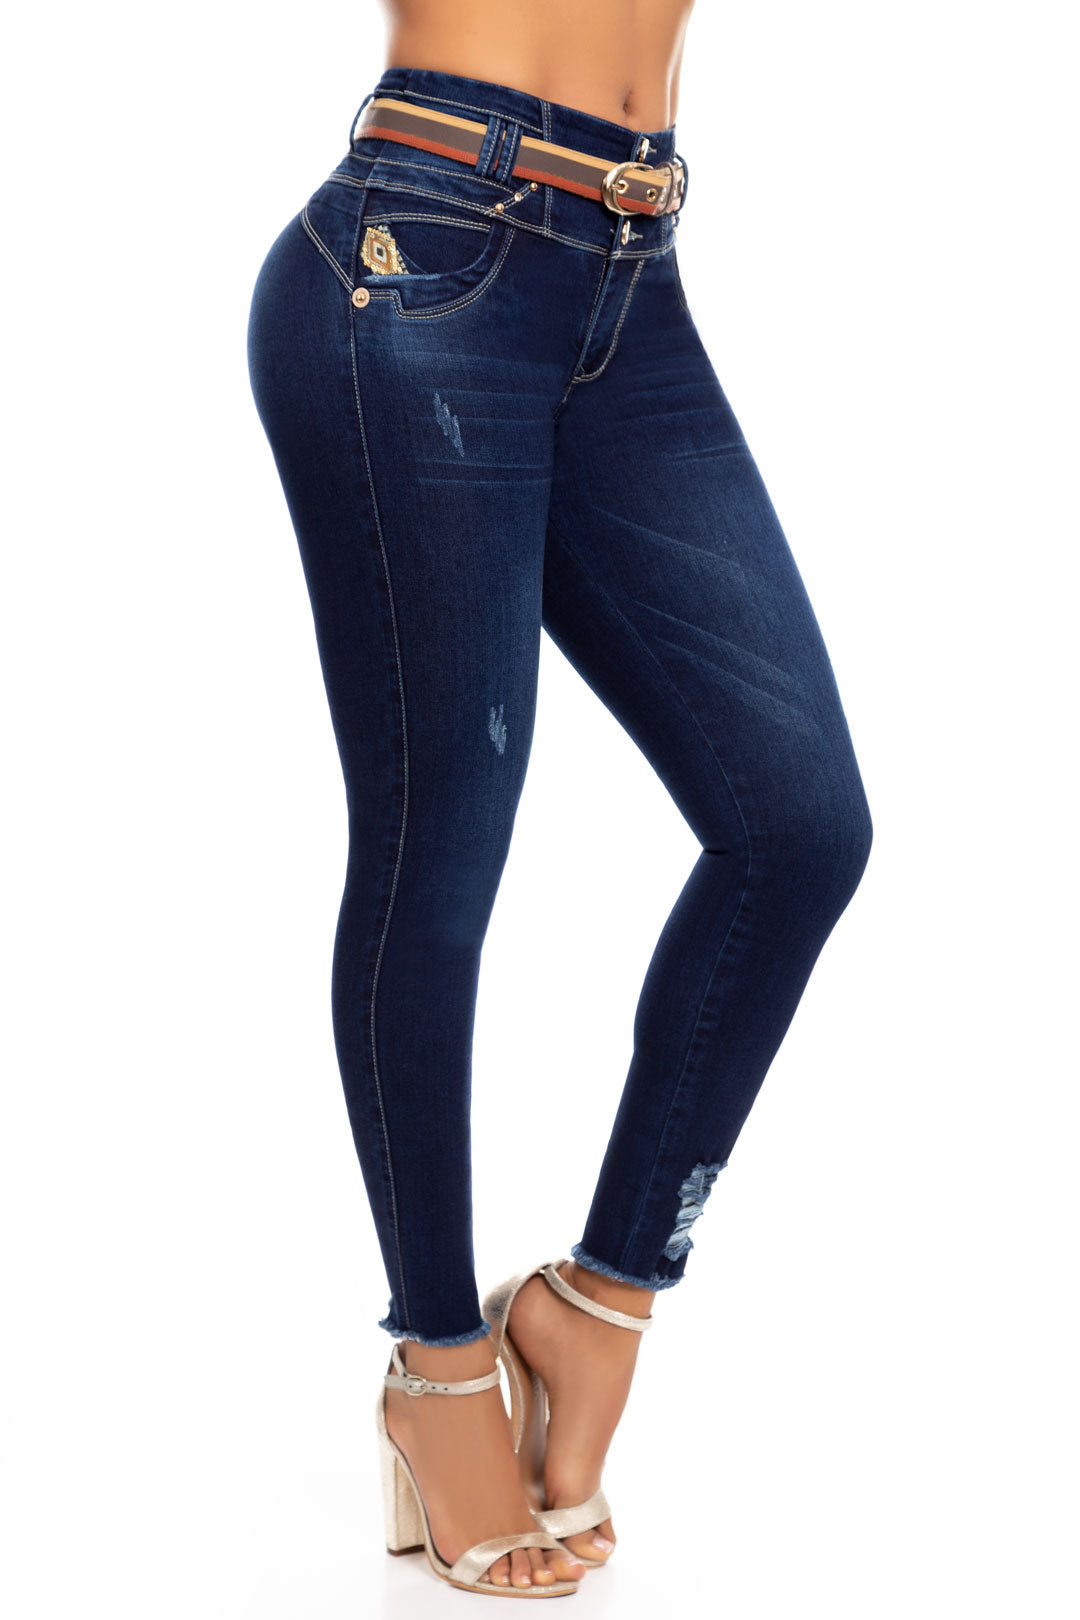 Pantalones Colombianos Levanta Cola 6270  Carlos Prada Jeans – Colombiana  de jeans